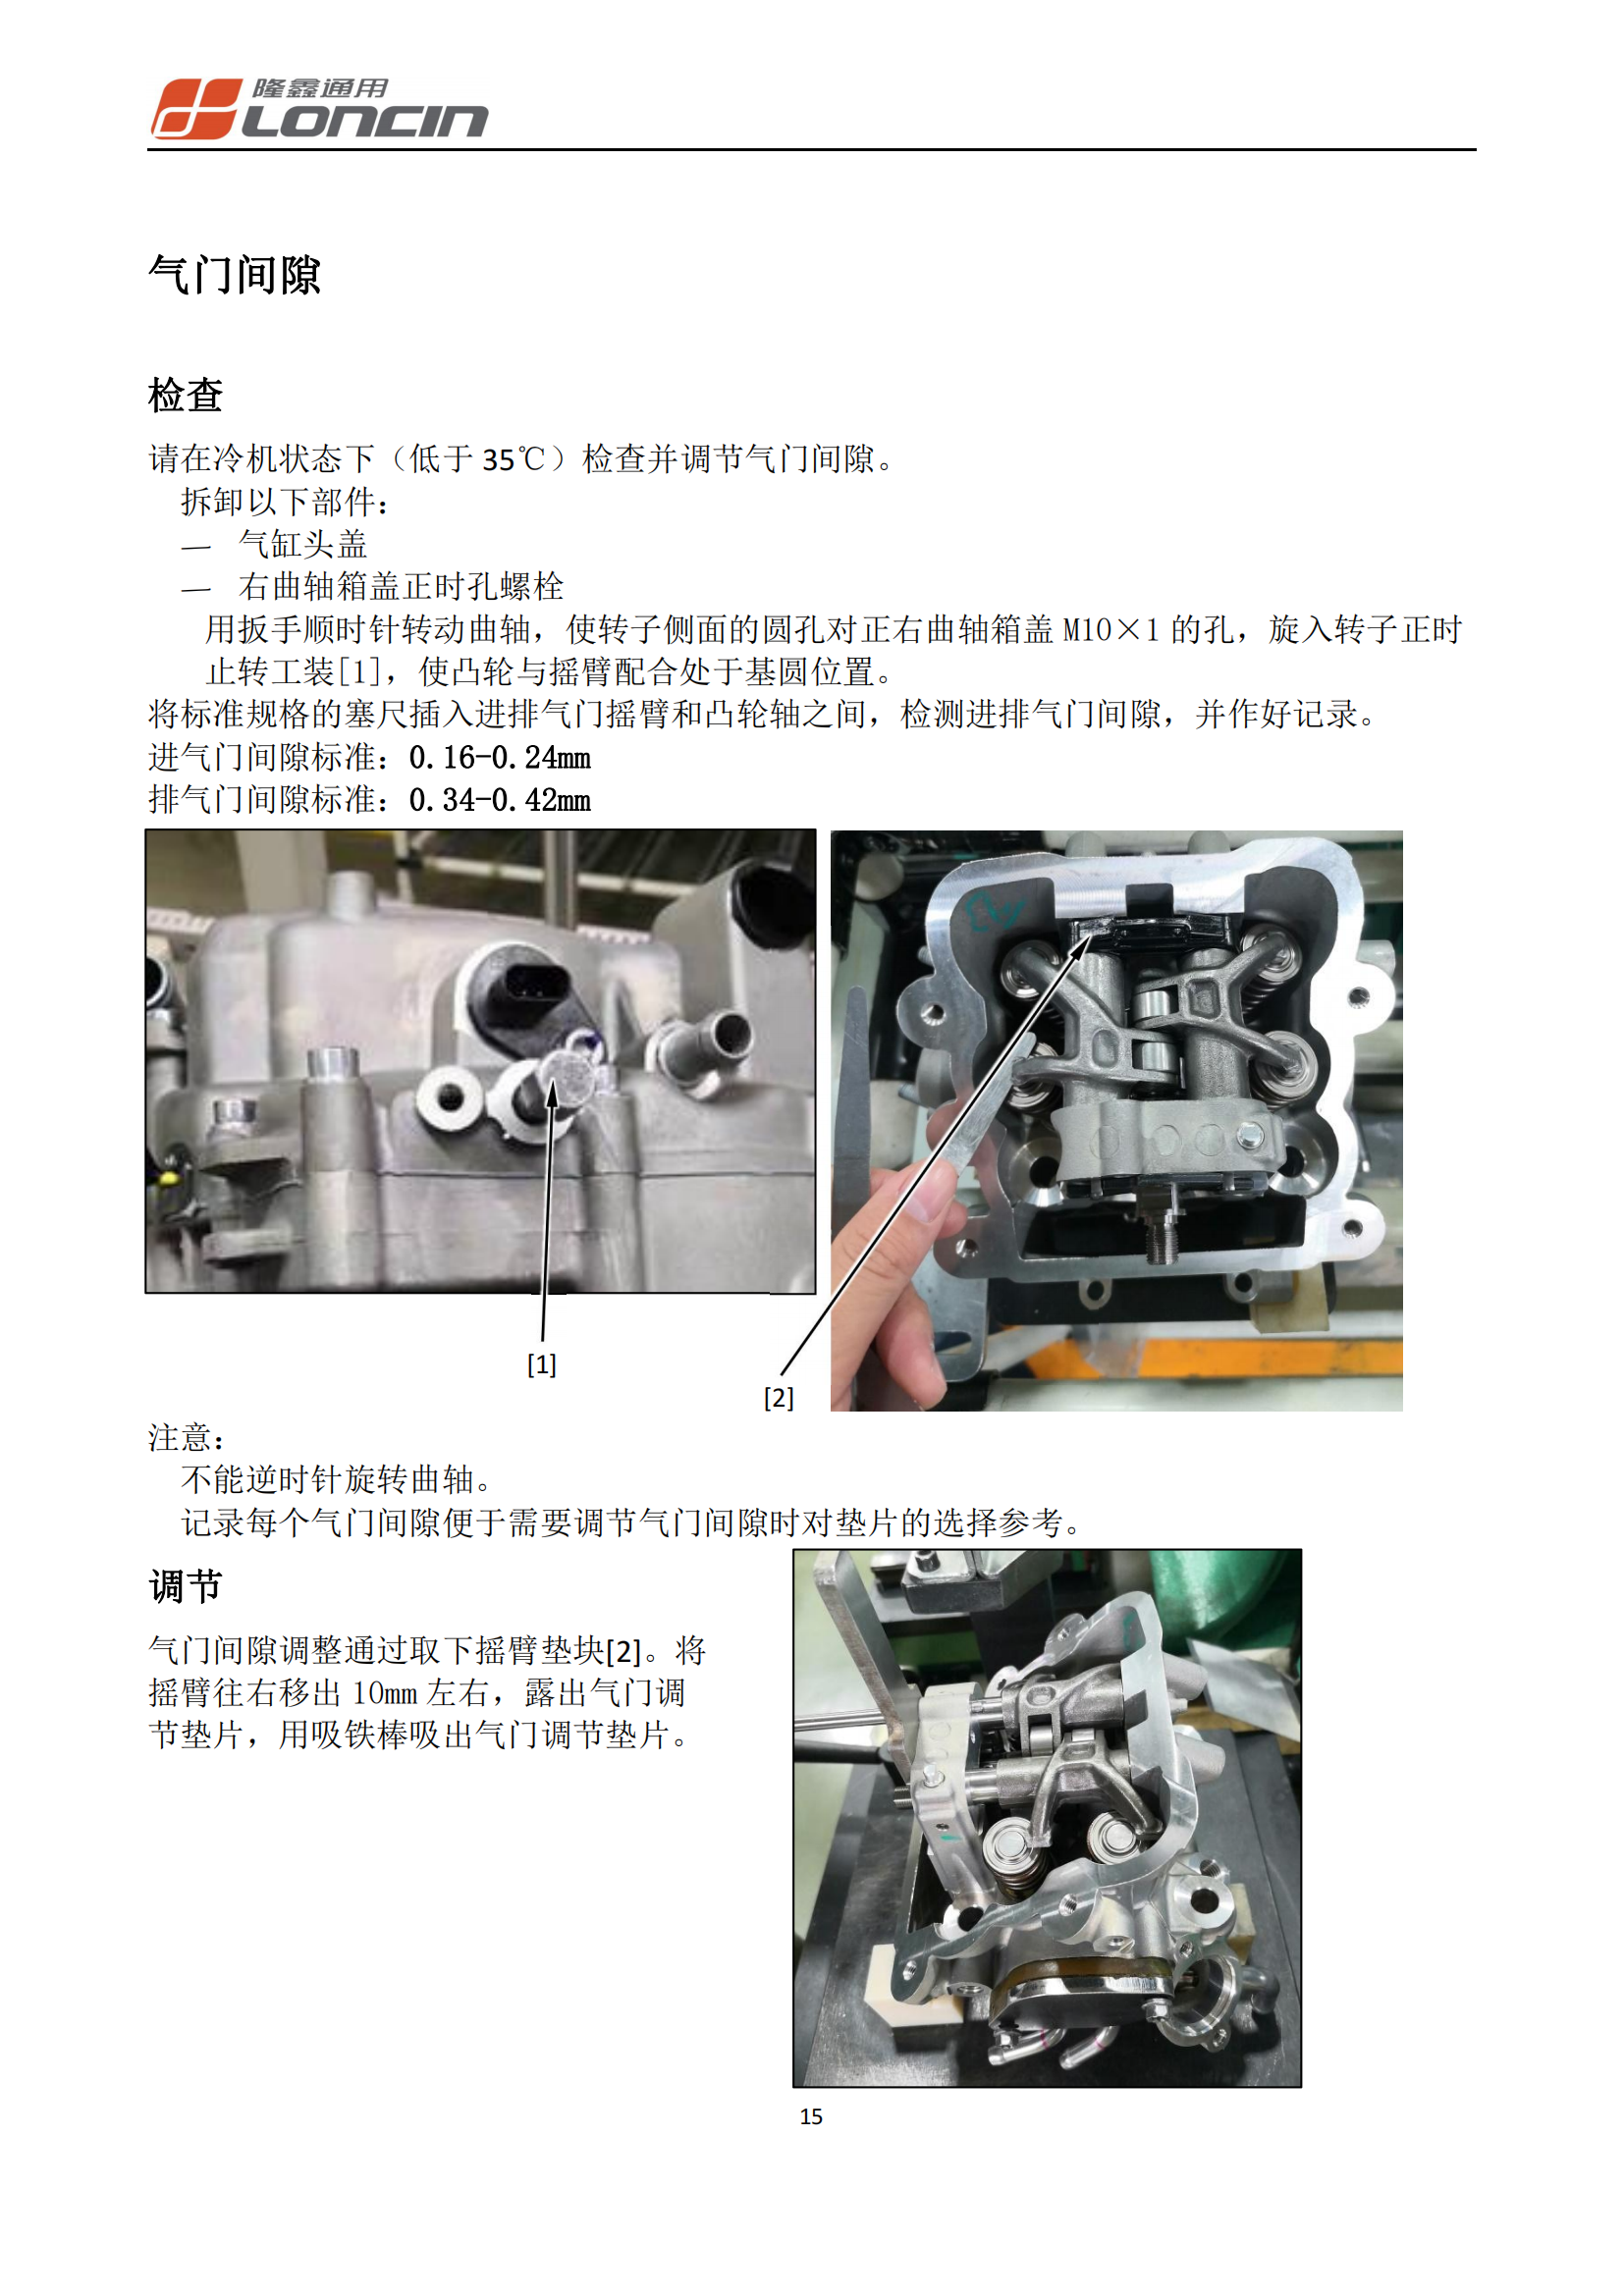 原版中文隆鑫无极SR4MAX发动机维修手册KS350发动机维修手册插图4